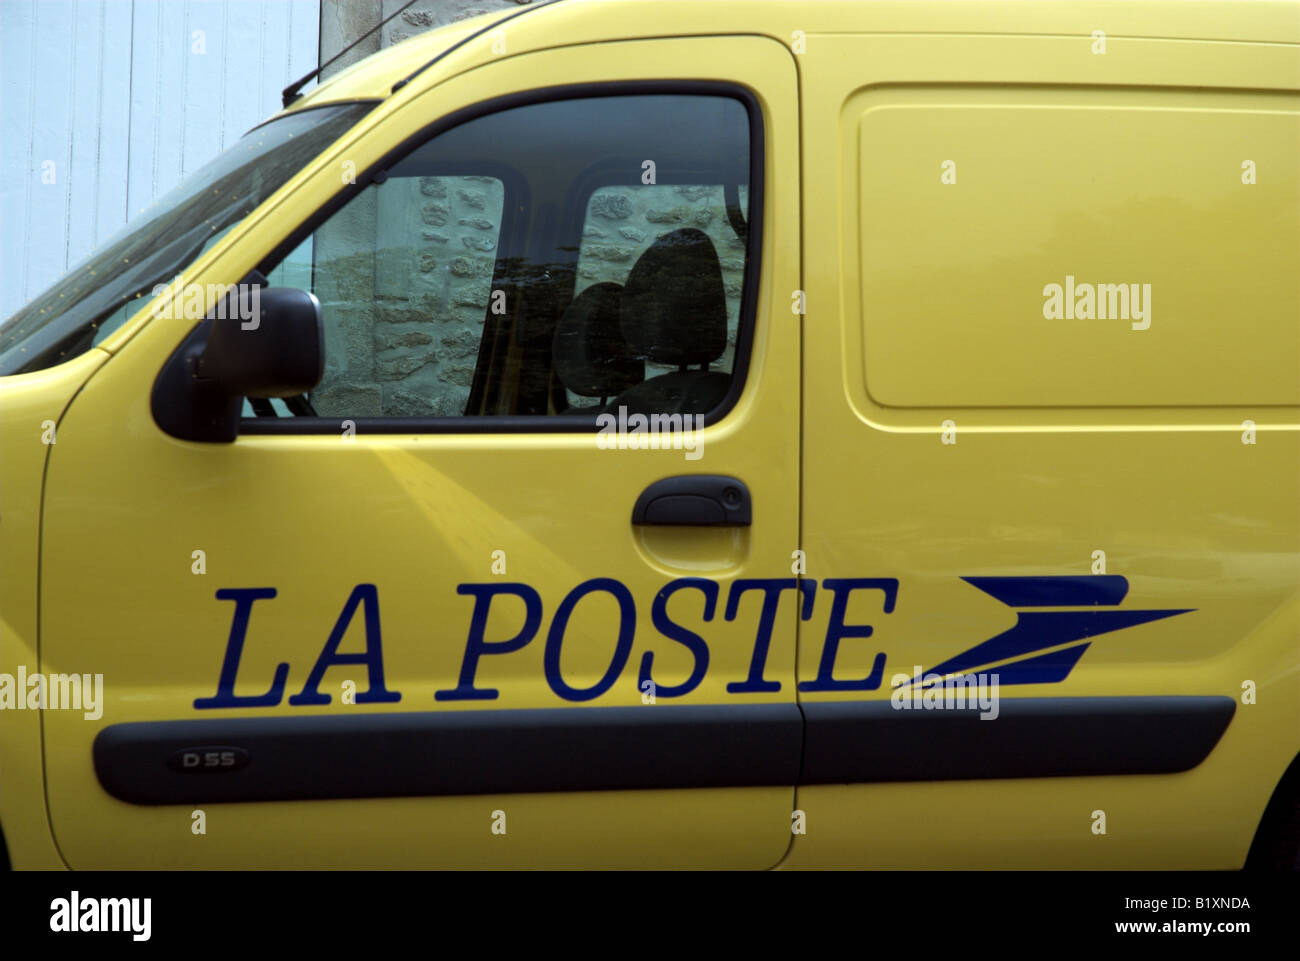 La Poste, poste française van, Argentan, Normandie, France Photo Stock -  Alamy